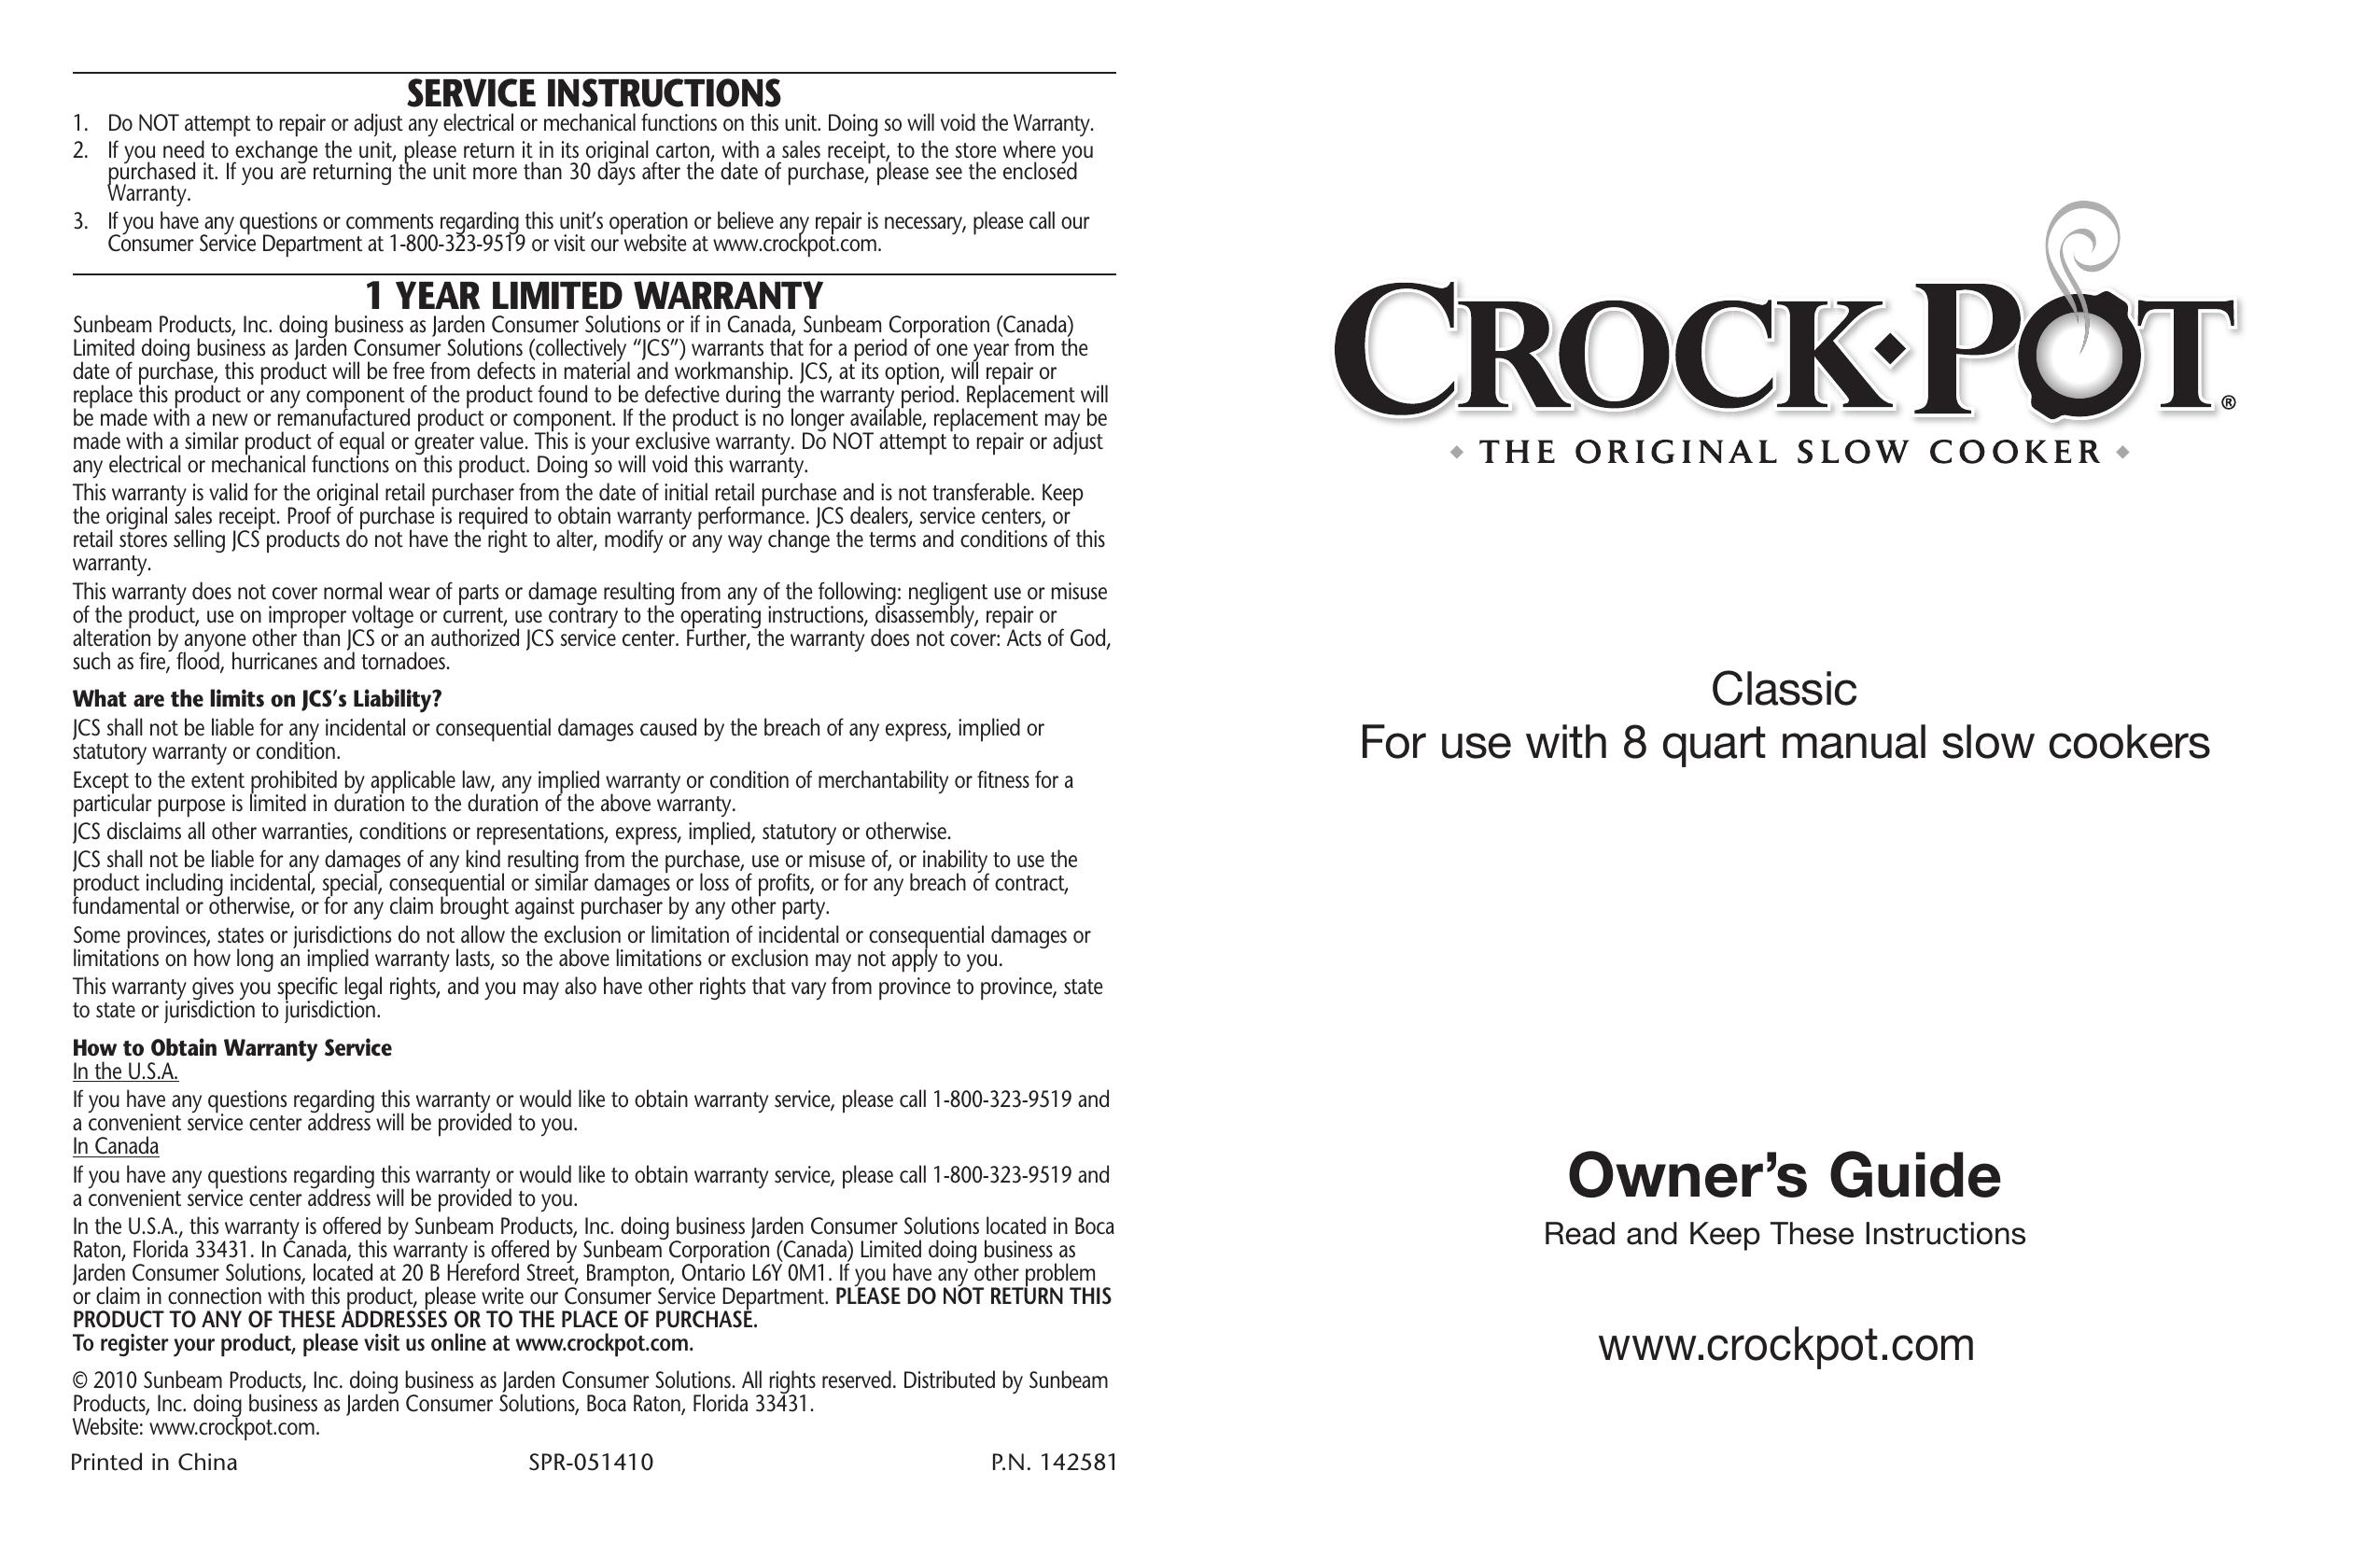 Crock-Pot Classic 8 Quart Slow Cooker User Manual